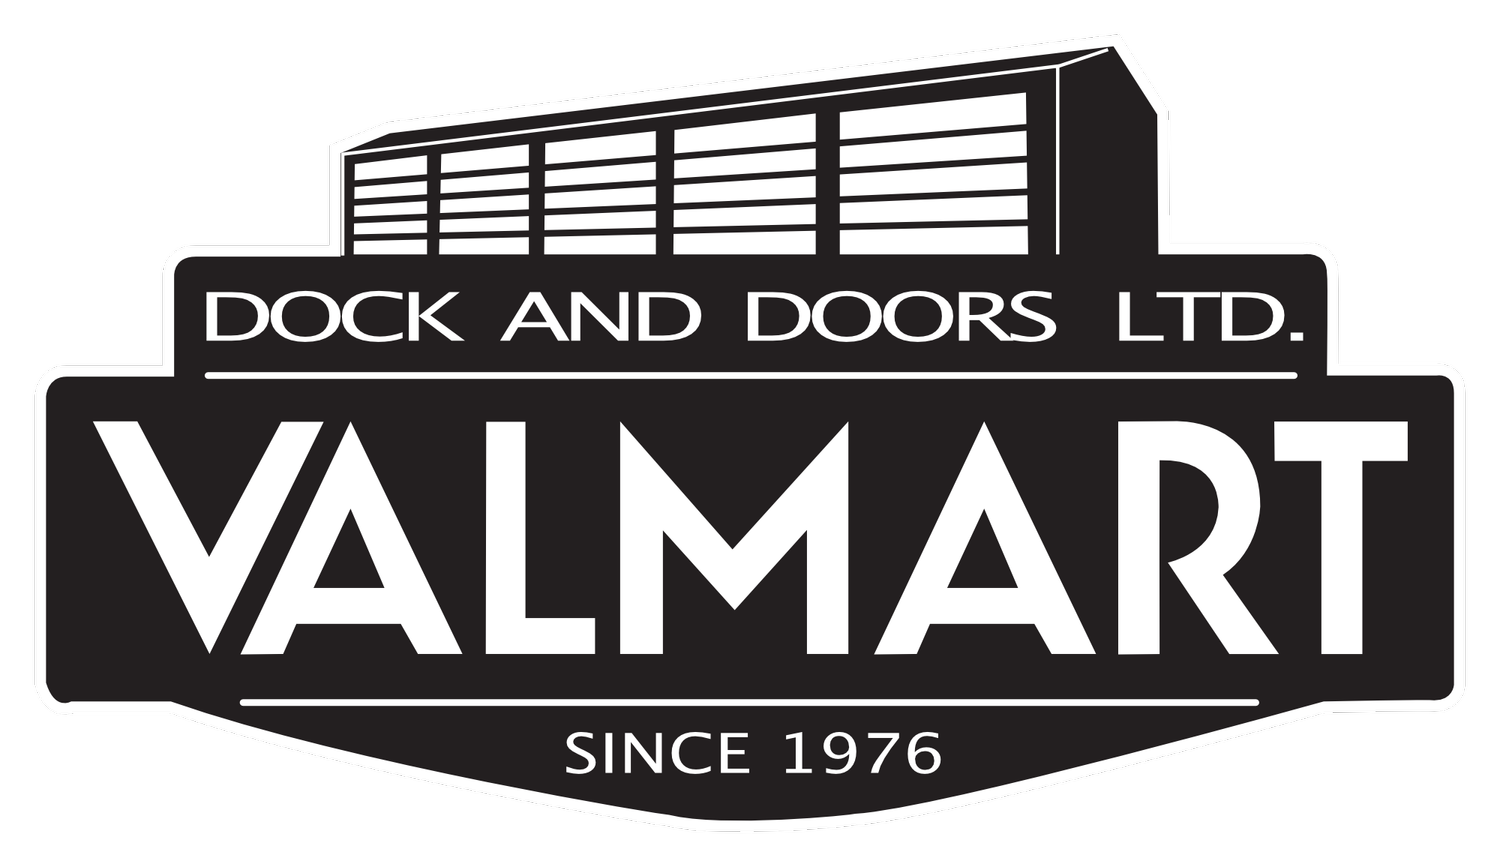 Val Mart Dock &amp; Doors Ltd.